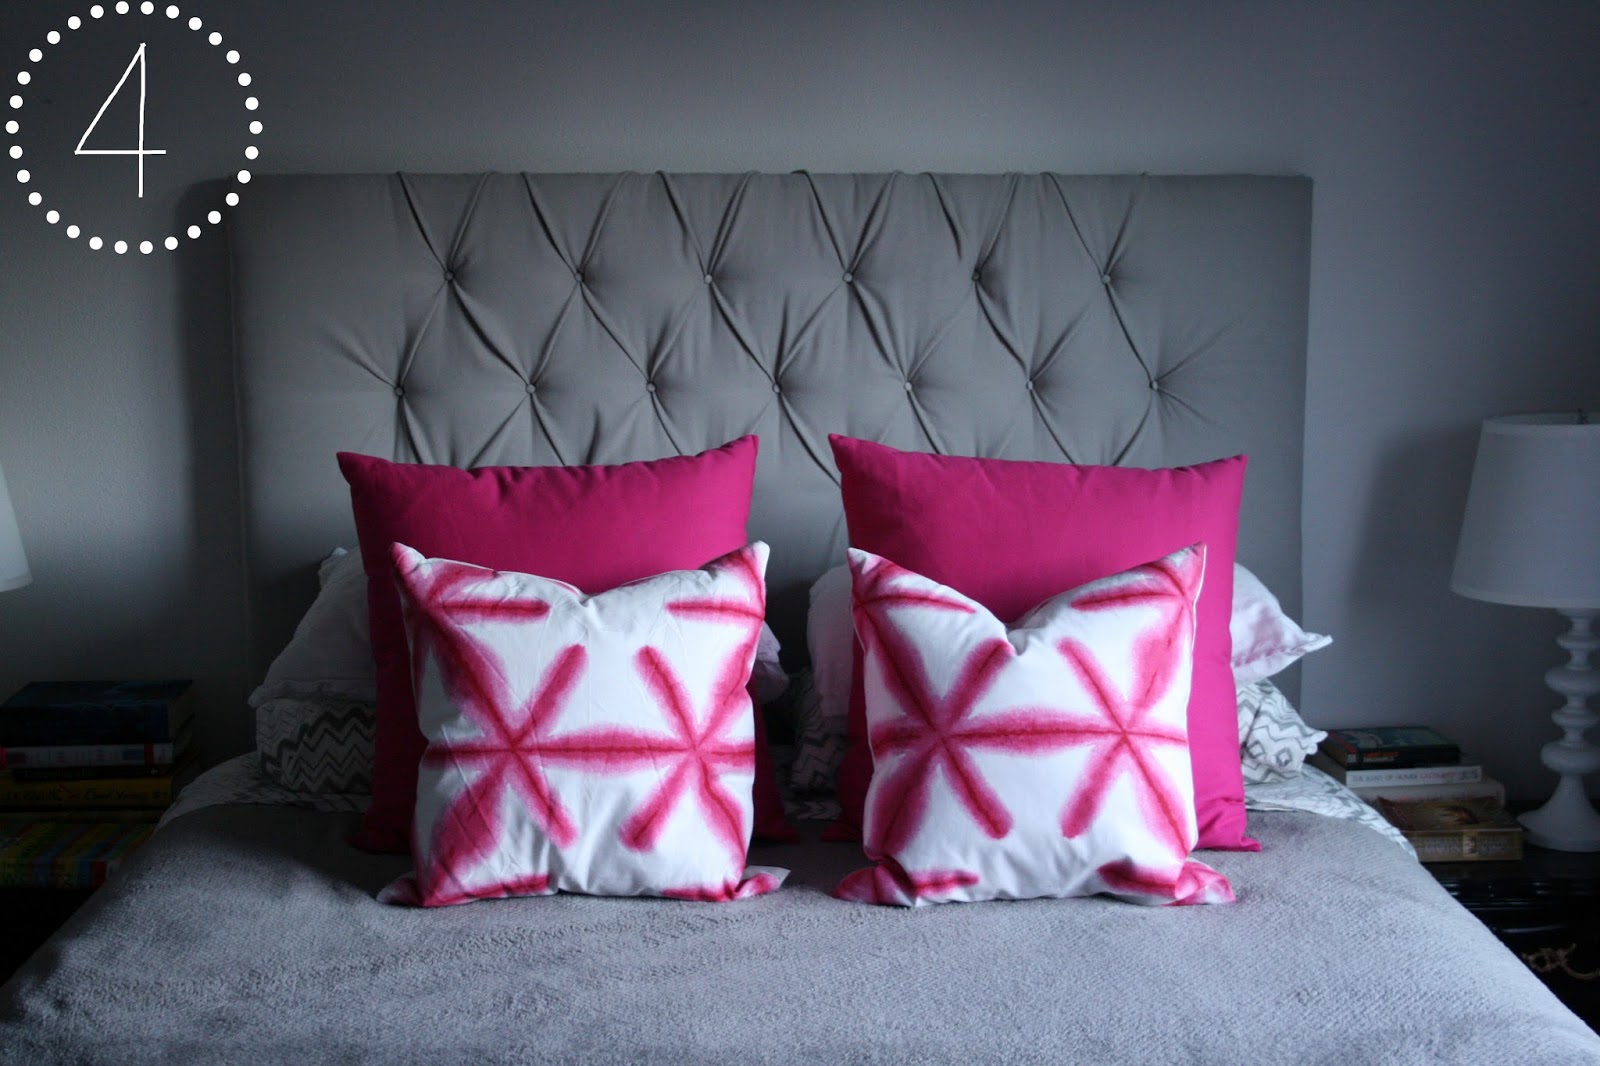 https://3.bp.blogspot.com/--_tMy4I1XTY/UfSax-s40LI/AAAAAAAAAbk/5VFNr9EvGWM/s1600/Hot+pink+pillows+styling4.jpg